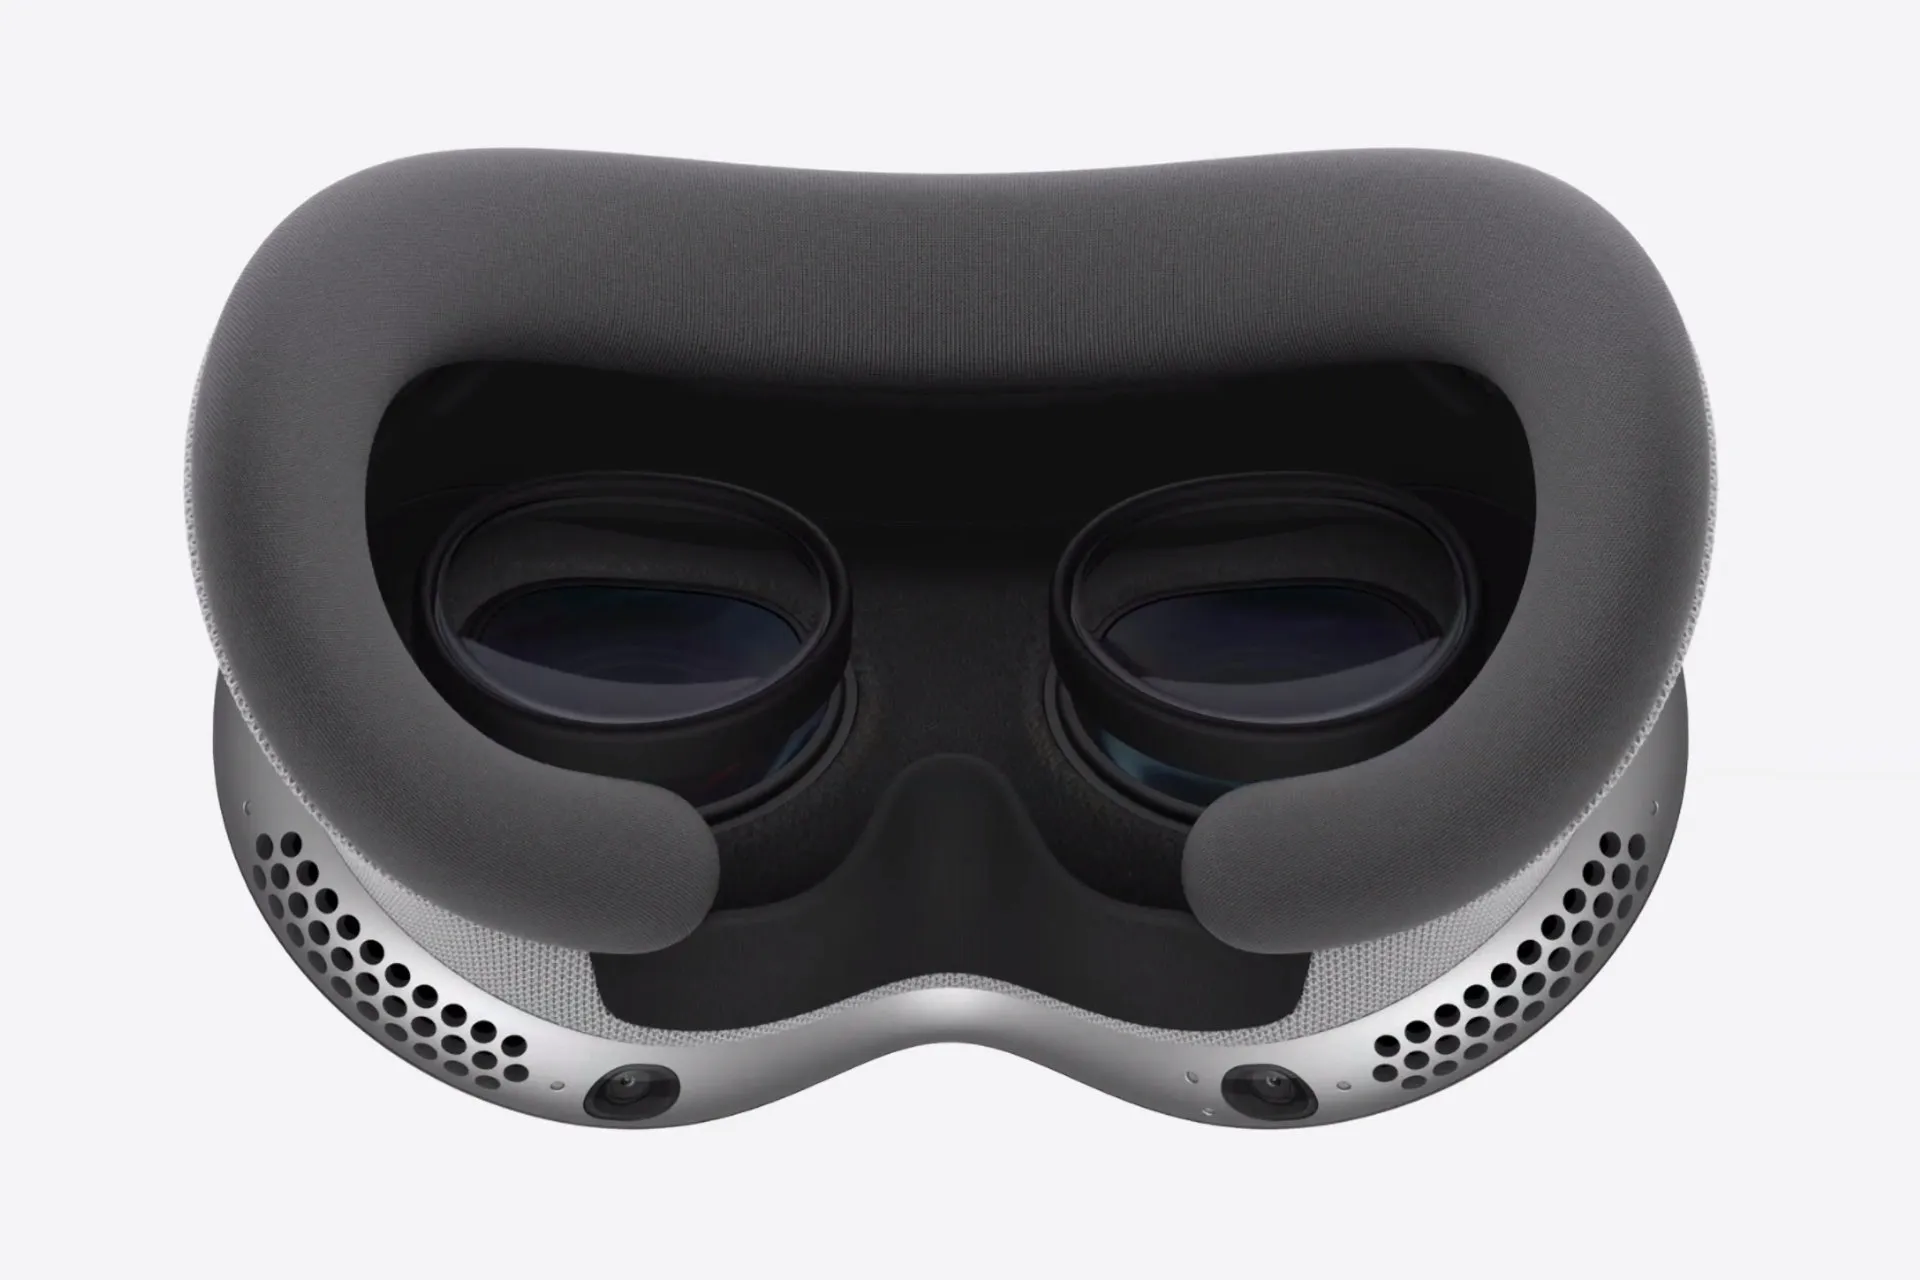 Il Vision Pro di Apple funziona con inserti ottici Zeiss per la correzione della vista.